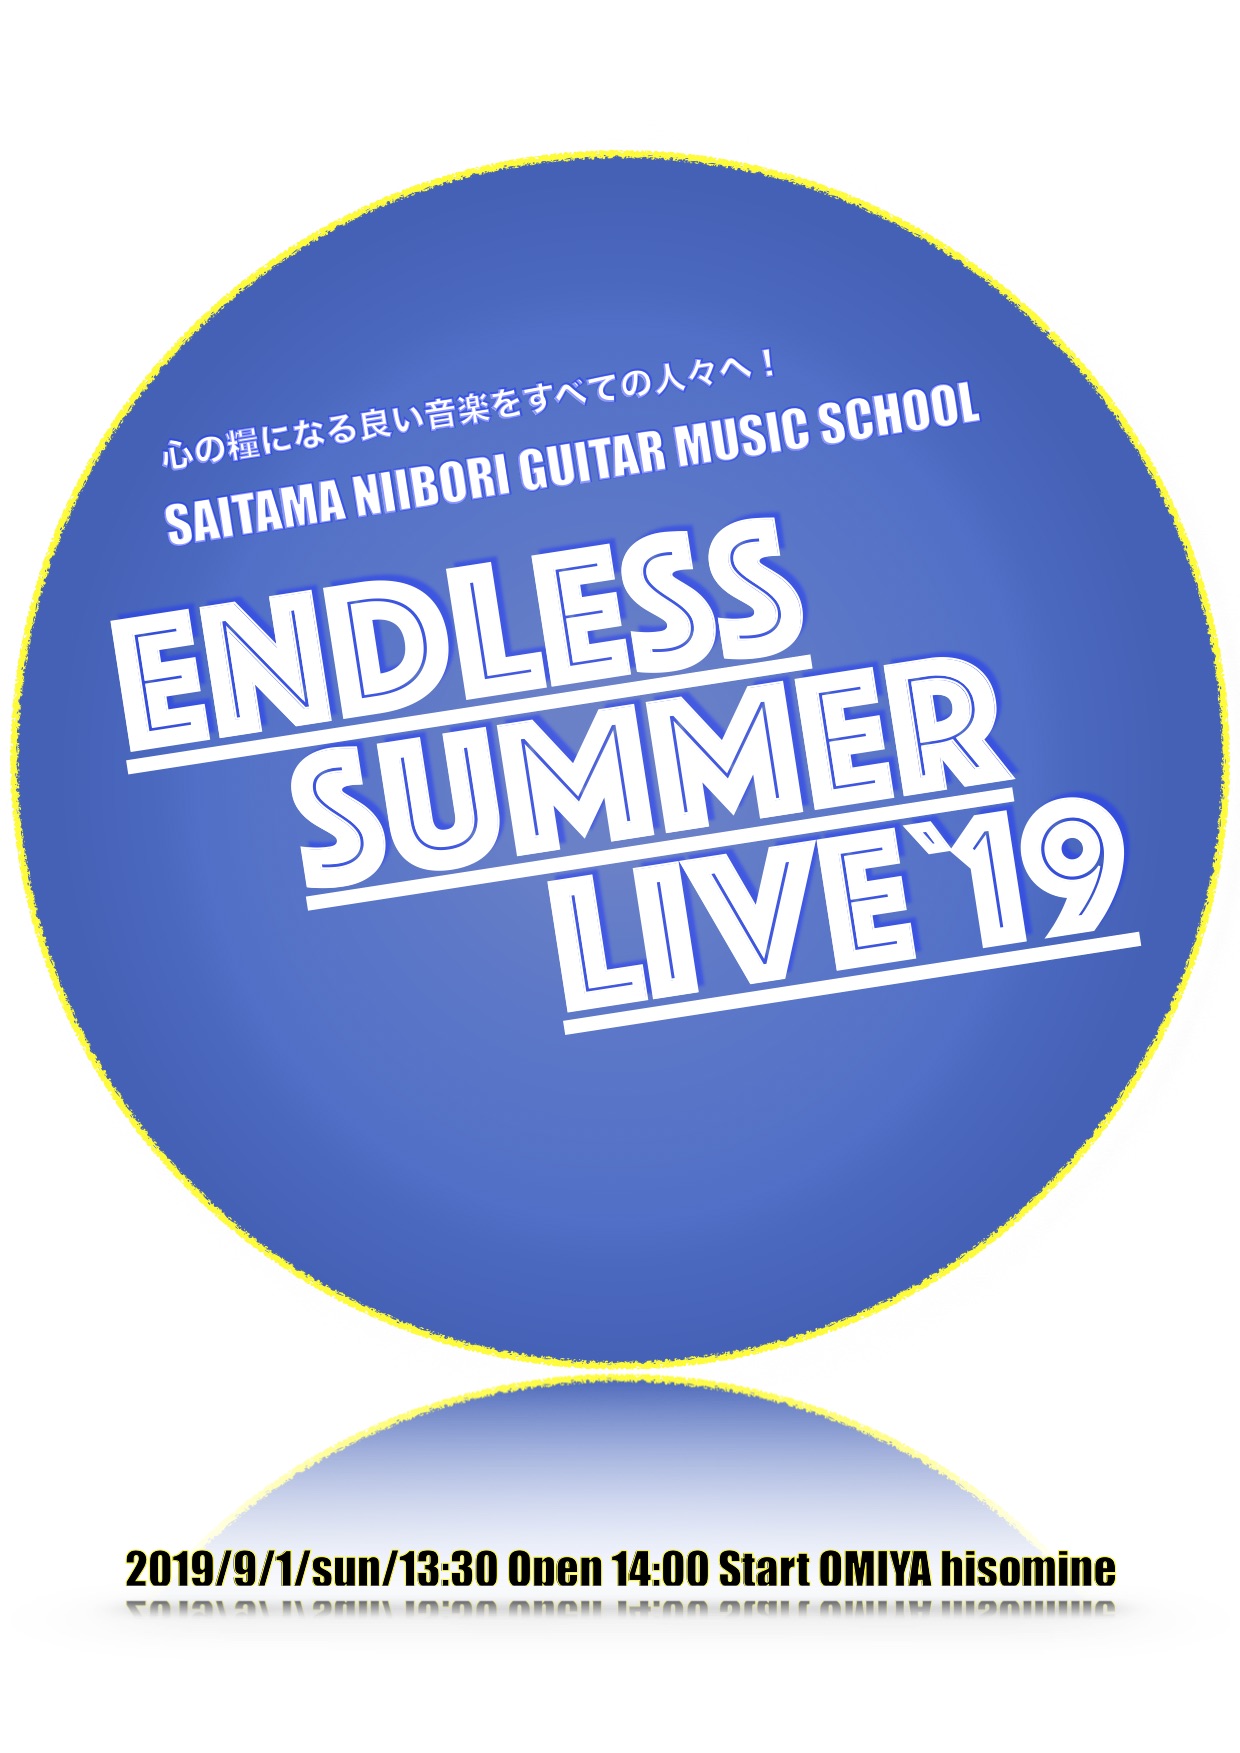 さいたま新堀ギター音楽院主催 Endless Summer Live